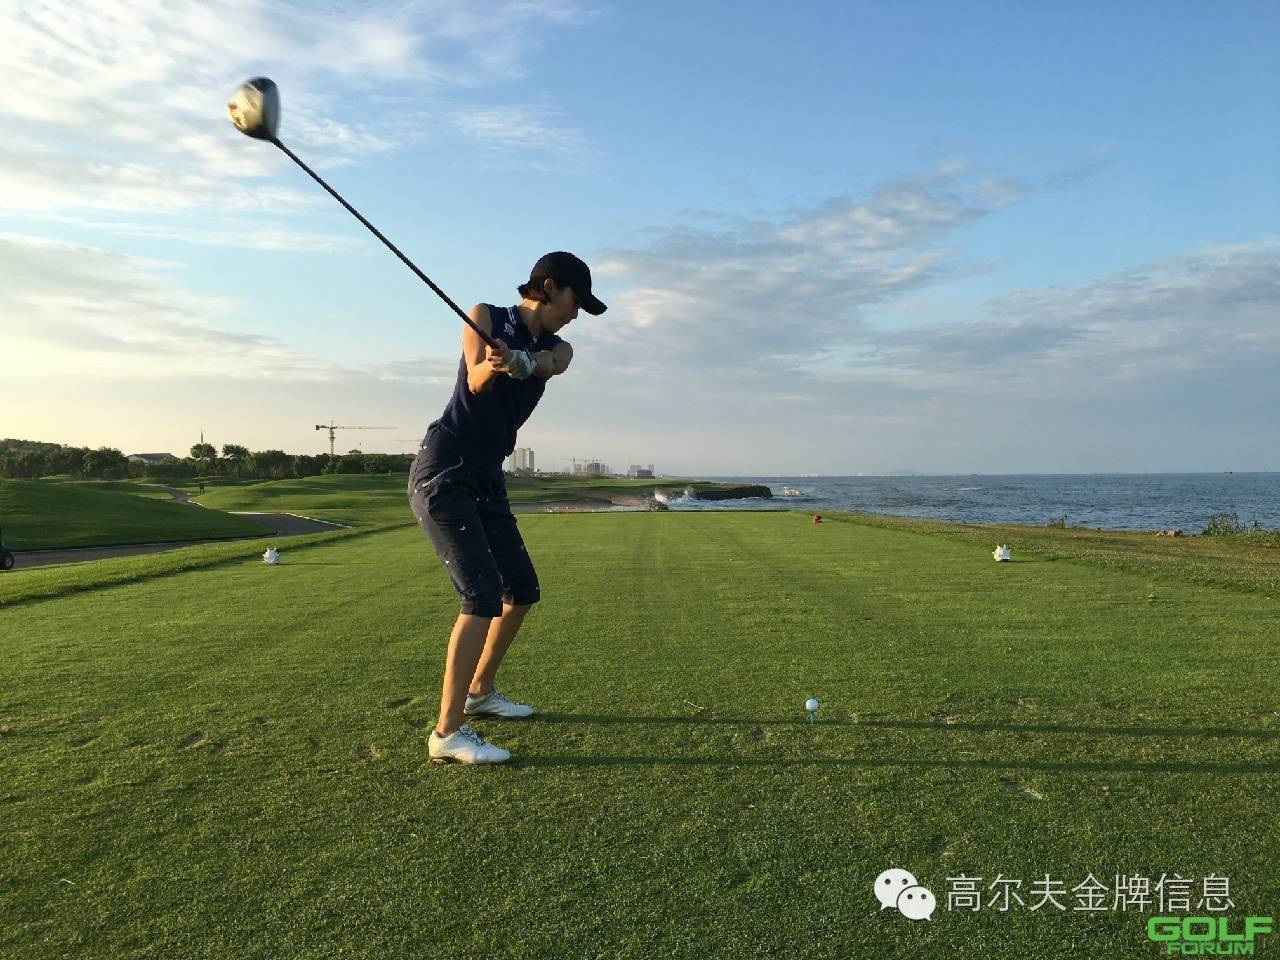 丹东五龙高尔夫邀您畅快高球体验朝鲜风情